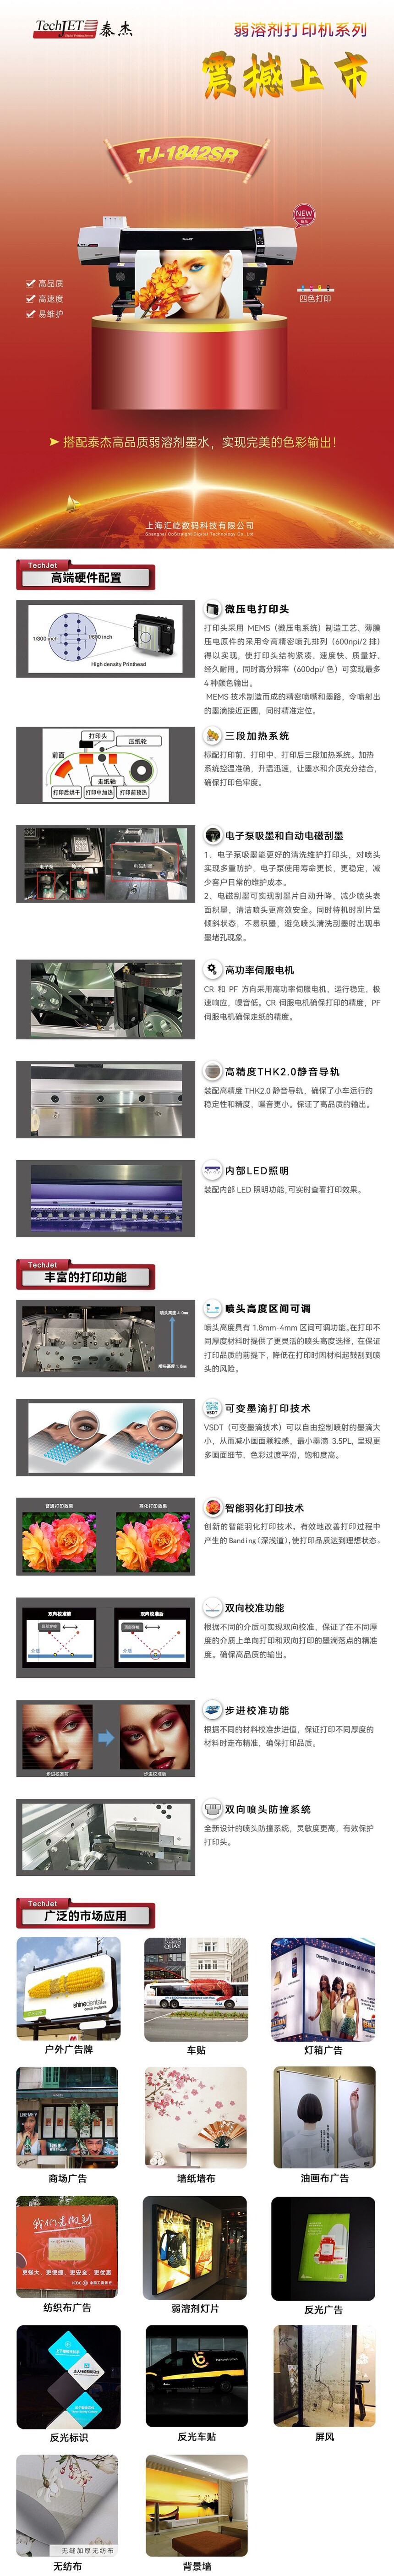 TJ-1842SR中文产品说明(1)微信公众号用.jpg